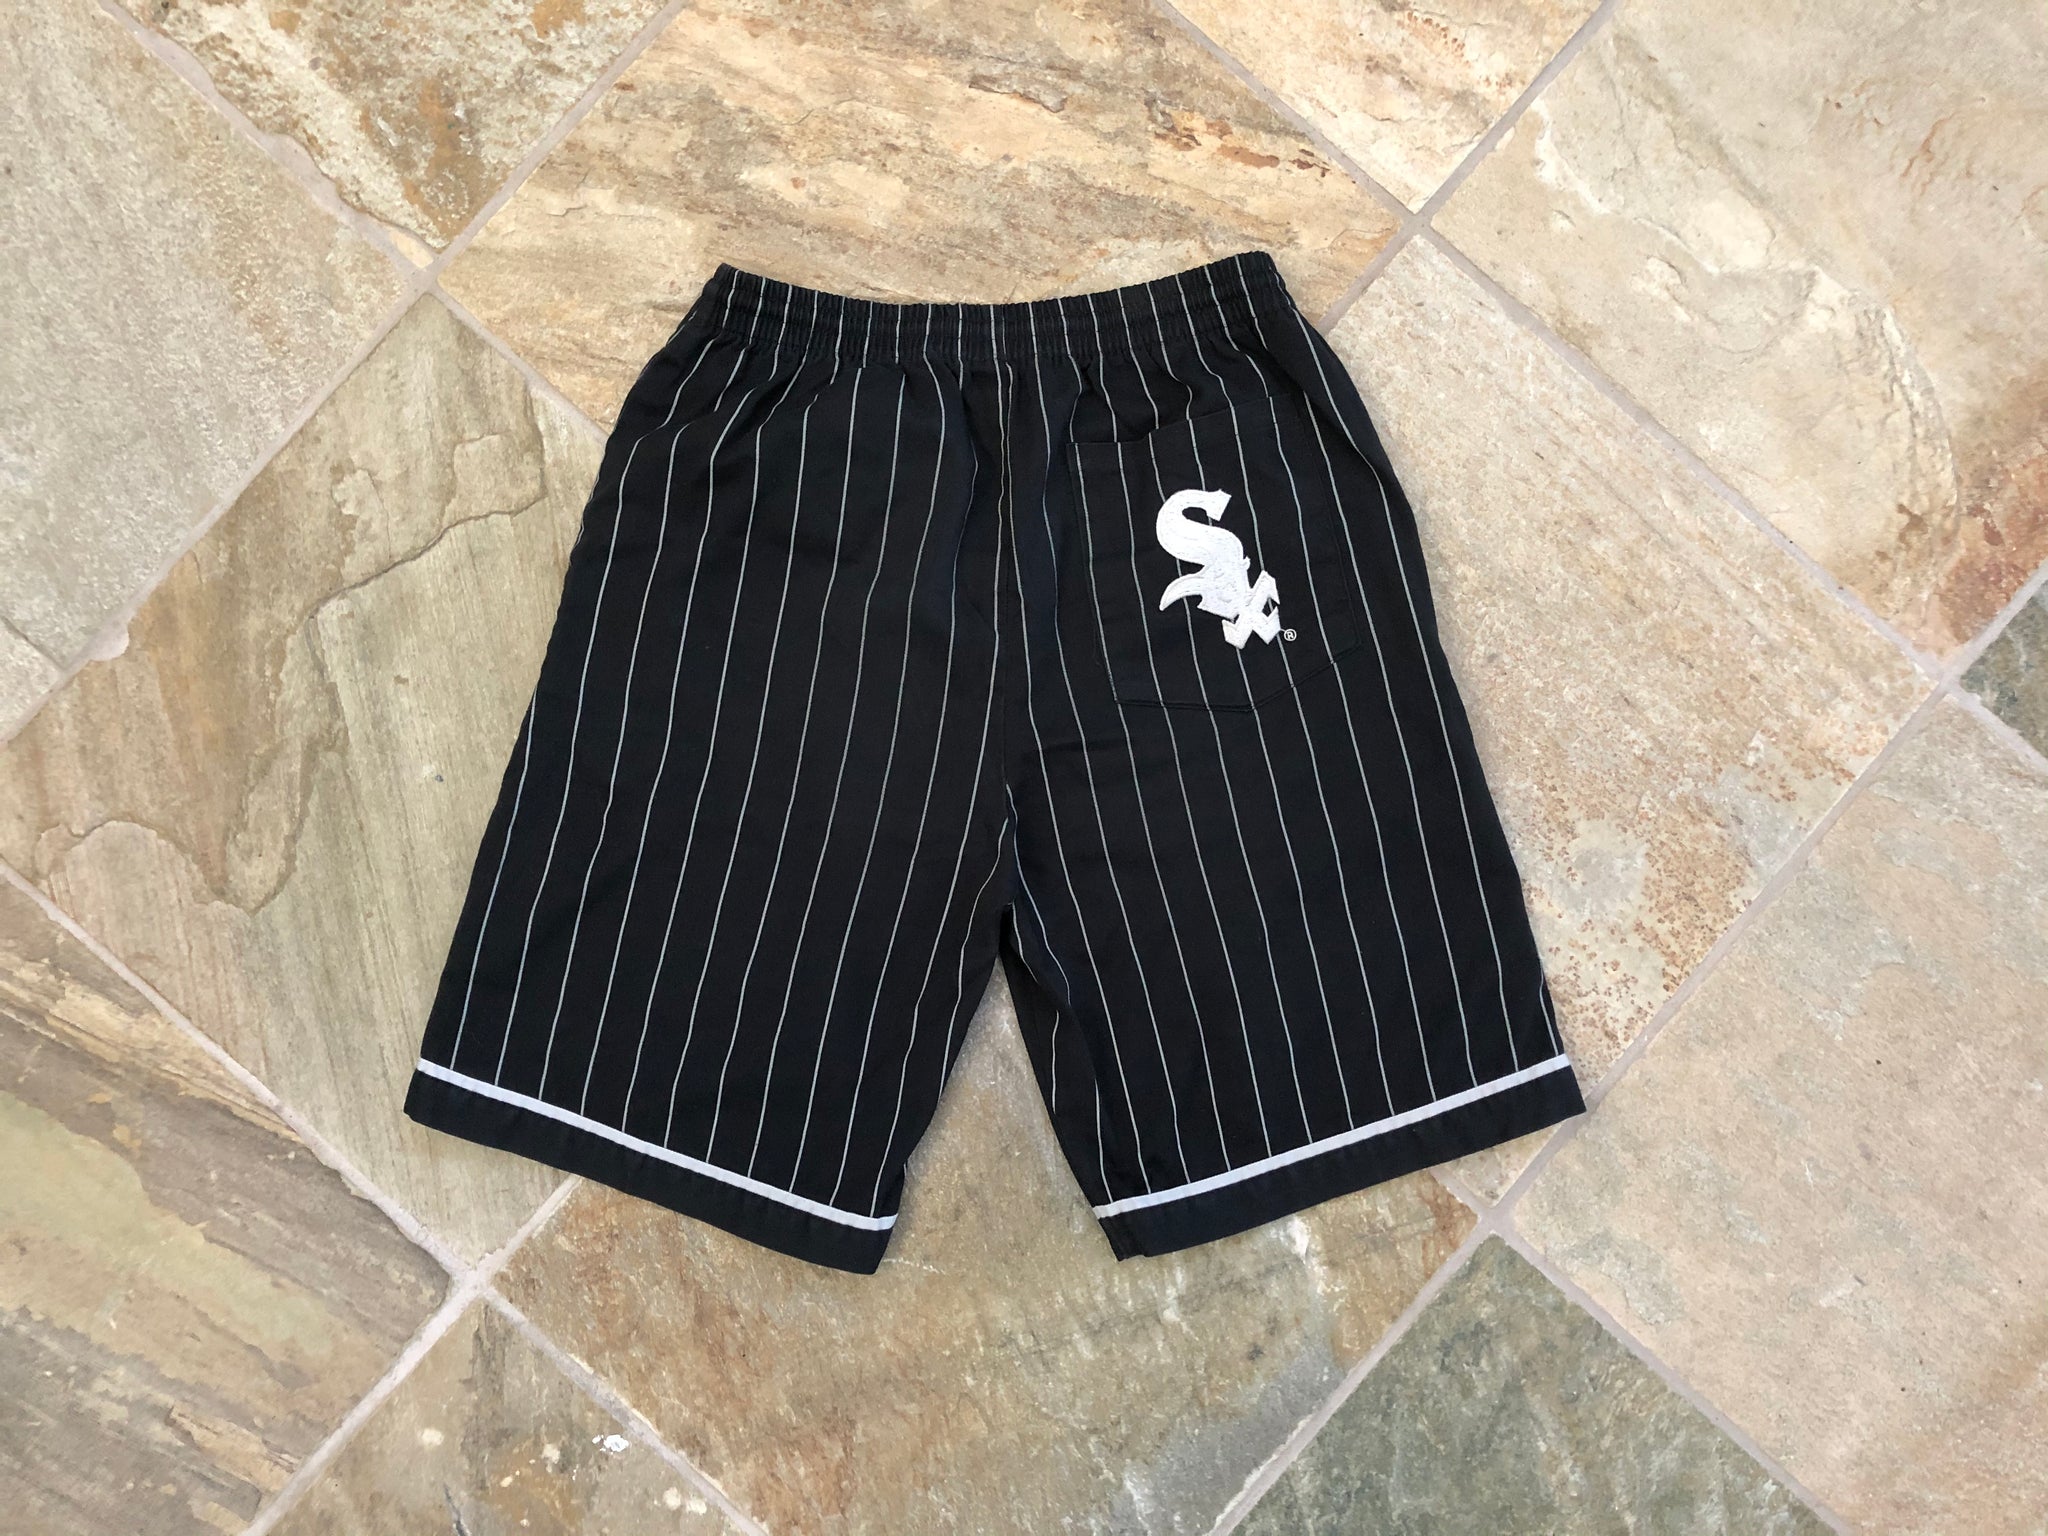 sox baseball shorts